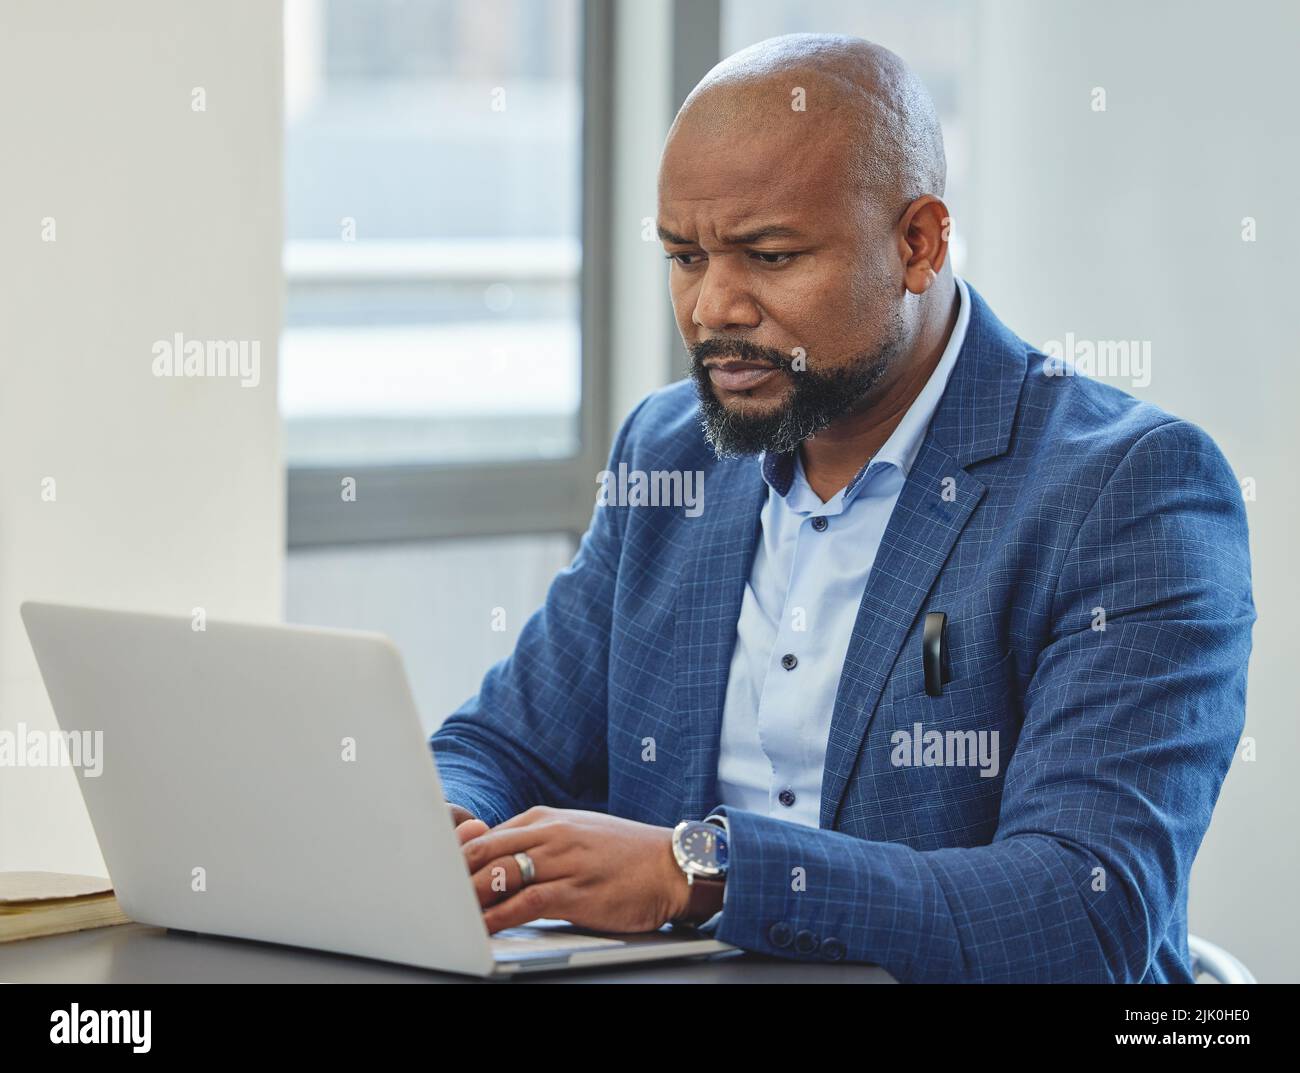 Les e-mails font partie de la tâche. Un homme d'affaires mûr et beau assis seul dans son bureau et utilisant son ordinateur portable. Banque D'Images